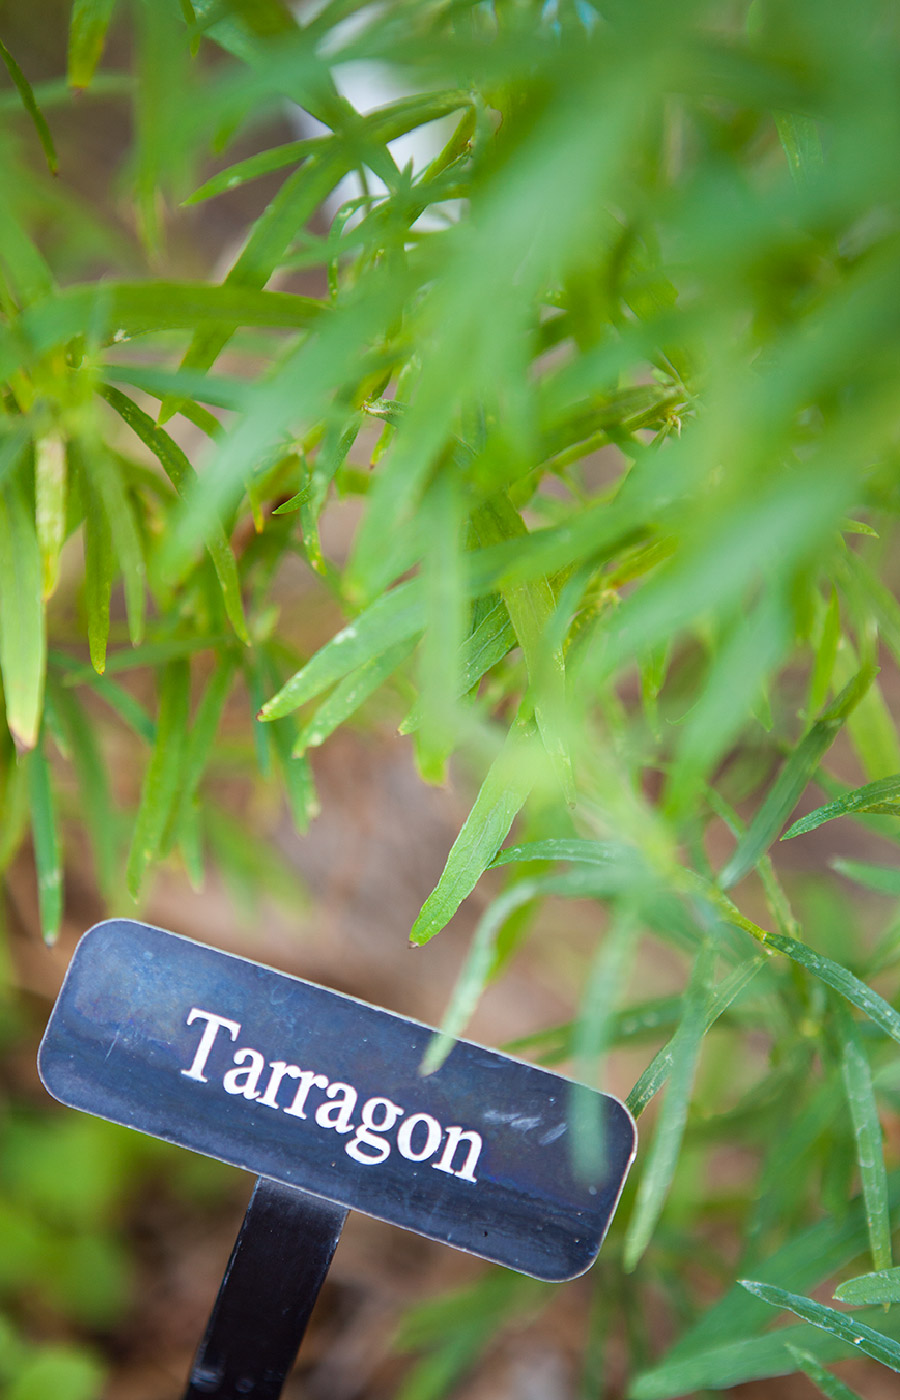 A Tarragon plant.